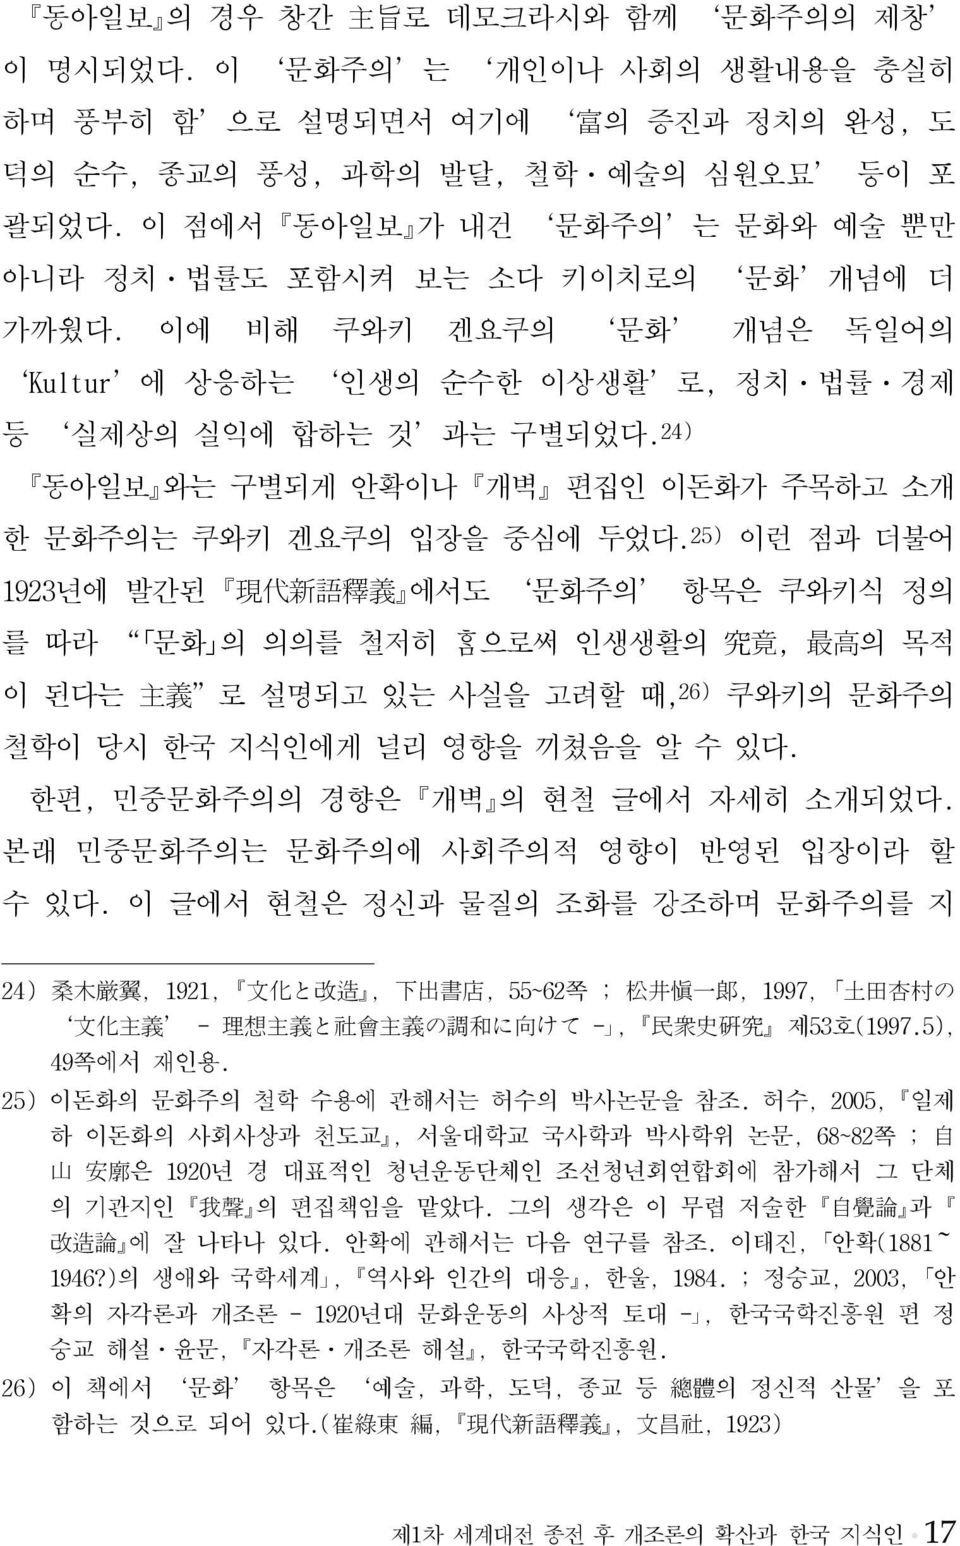 24) 동아일보 와는 구별되게 안확이나 개벽 편집인 이돈화가 주목하고 소개 한 문화주의는 쿠와키 겐요쿠의 입장을 중심에 두었다.